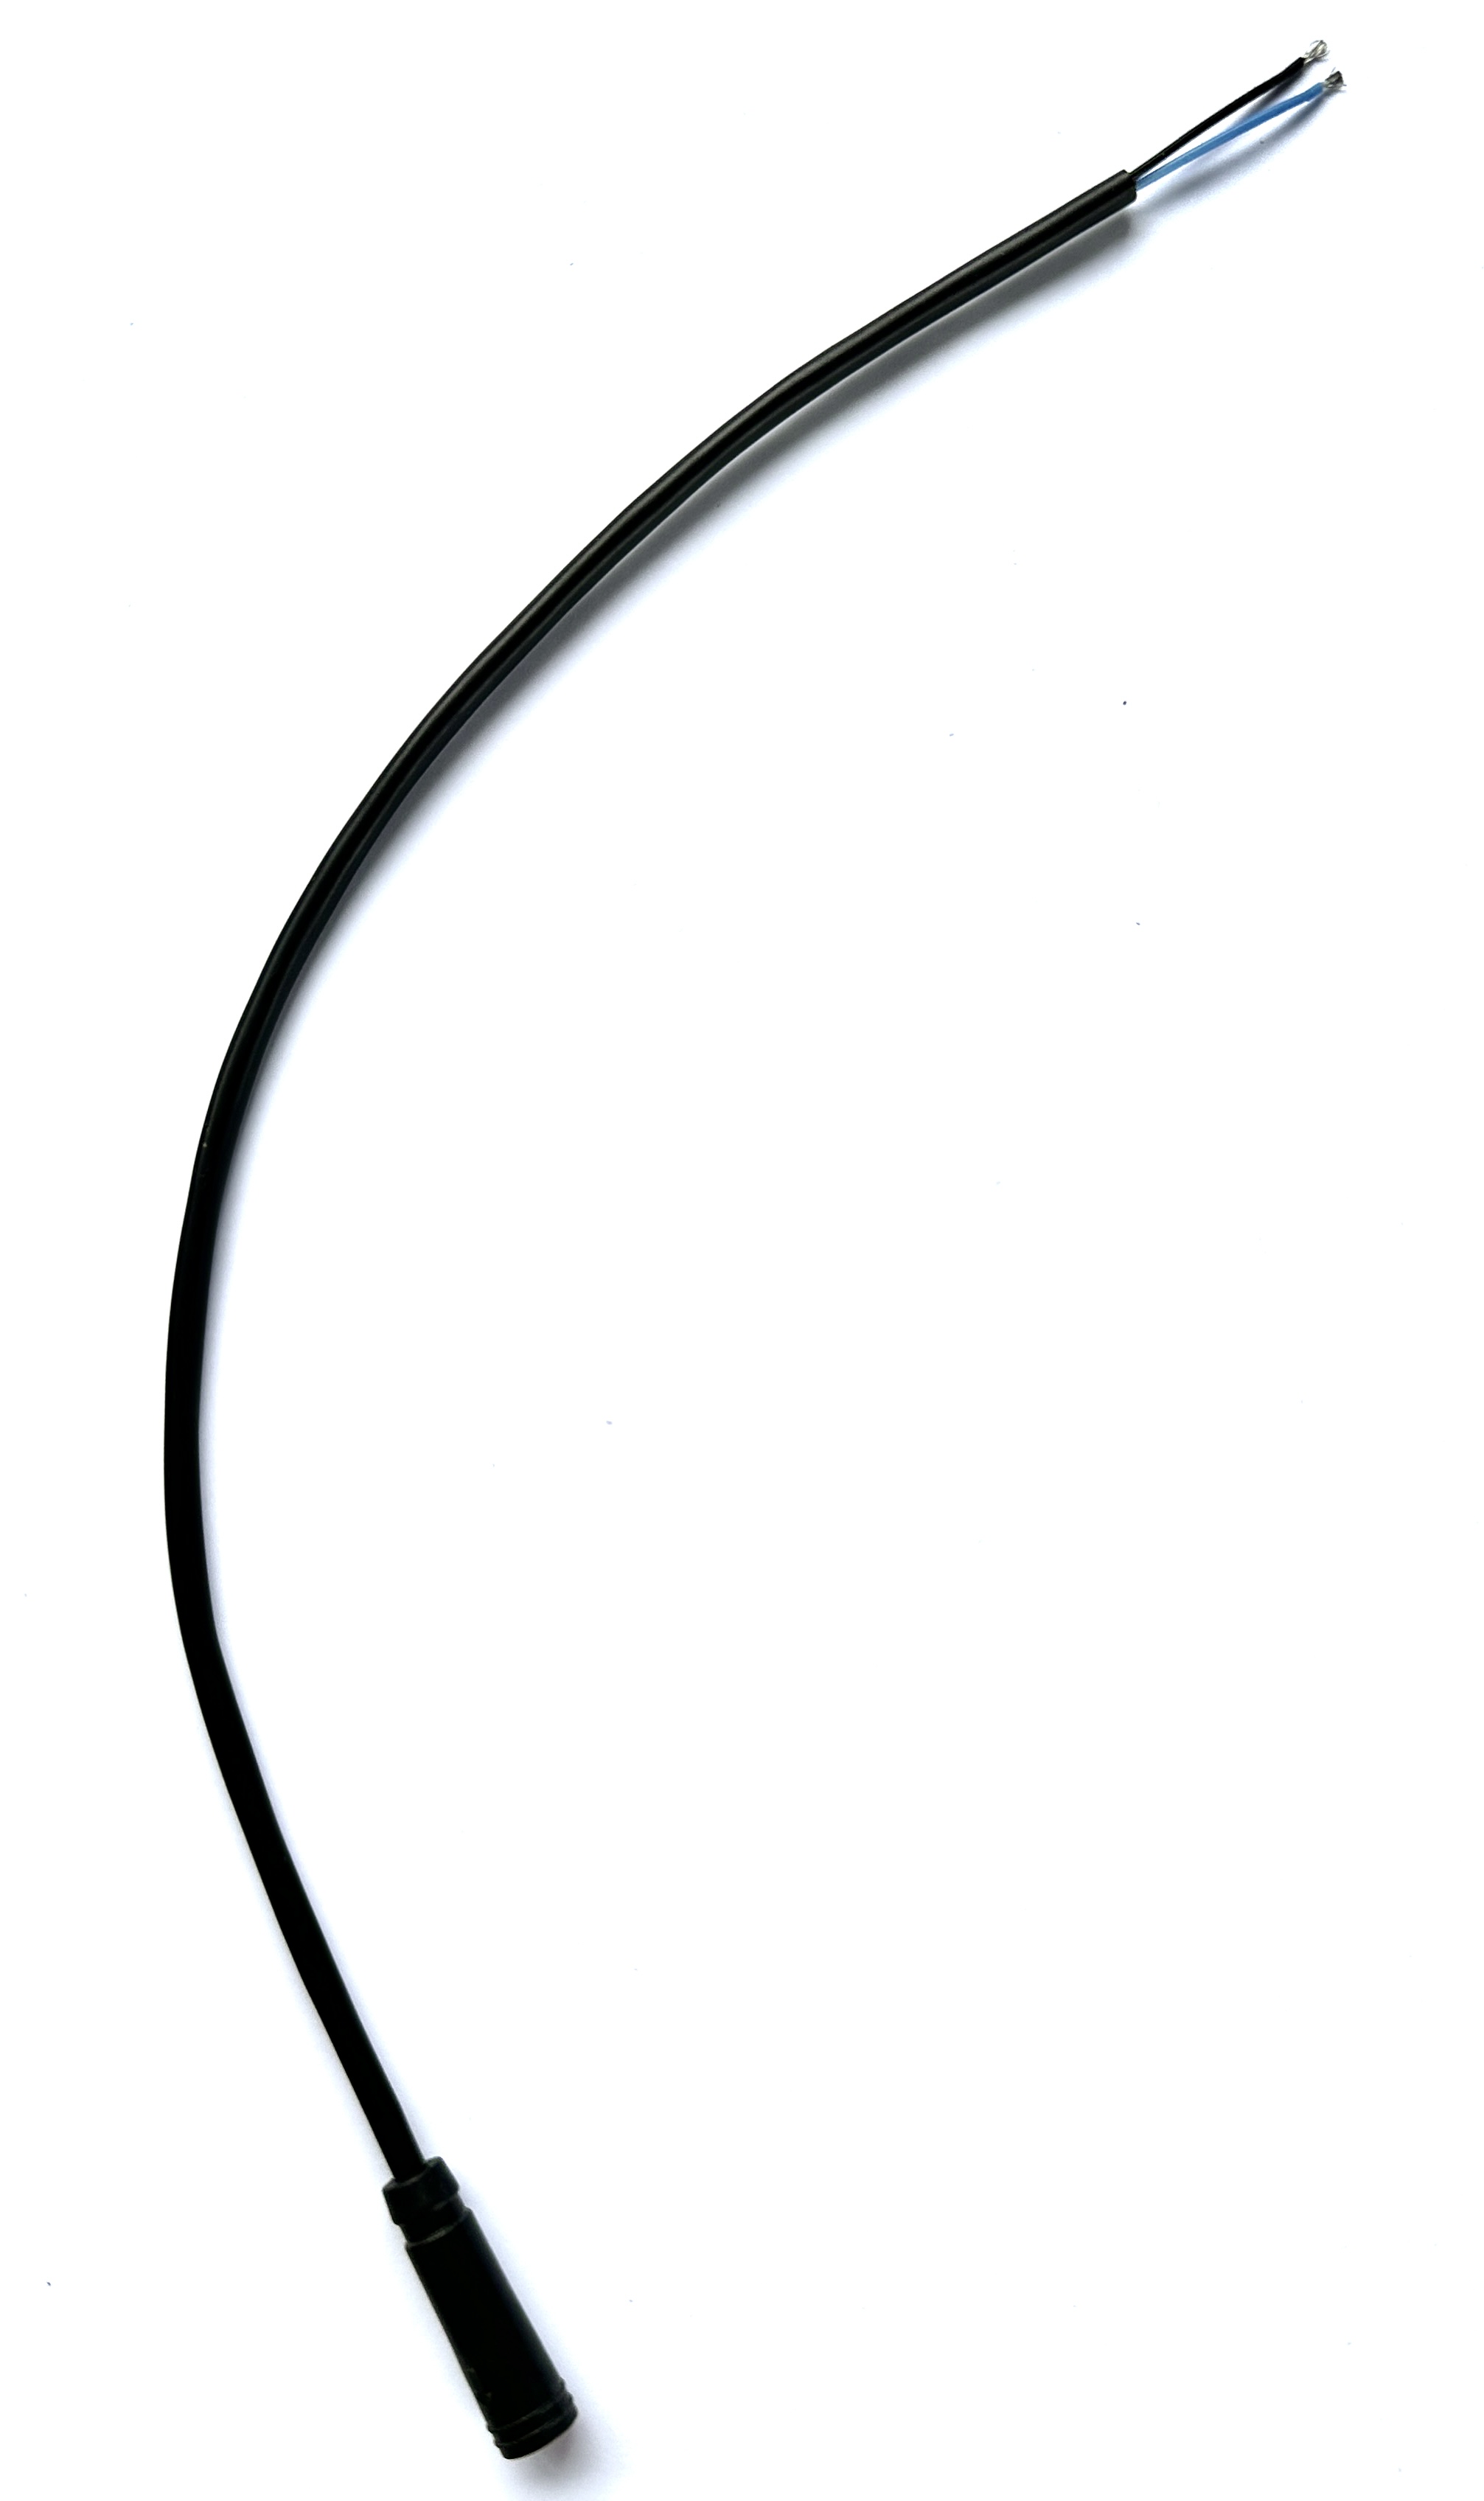 HIGO / Julet Câble d'extension 30 cm pour Ebike, 2 PIN femelle